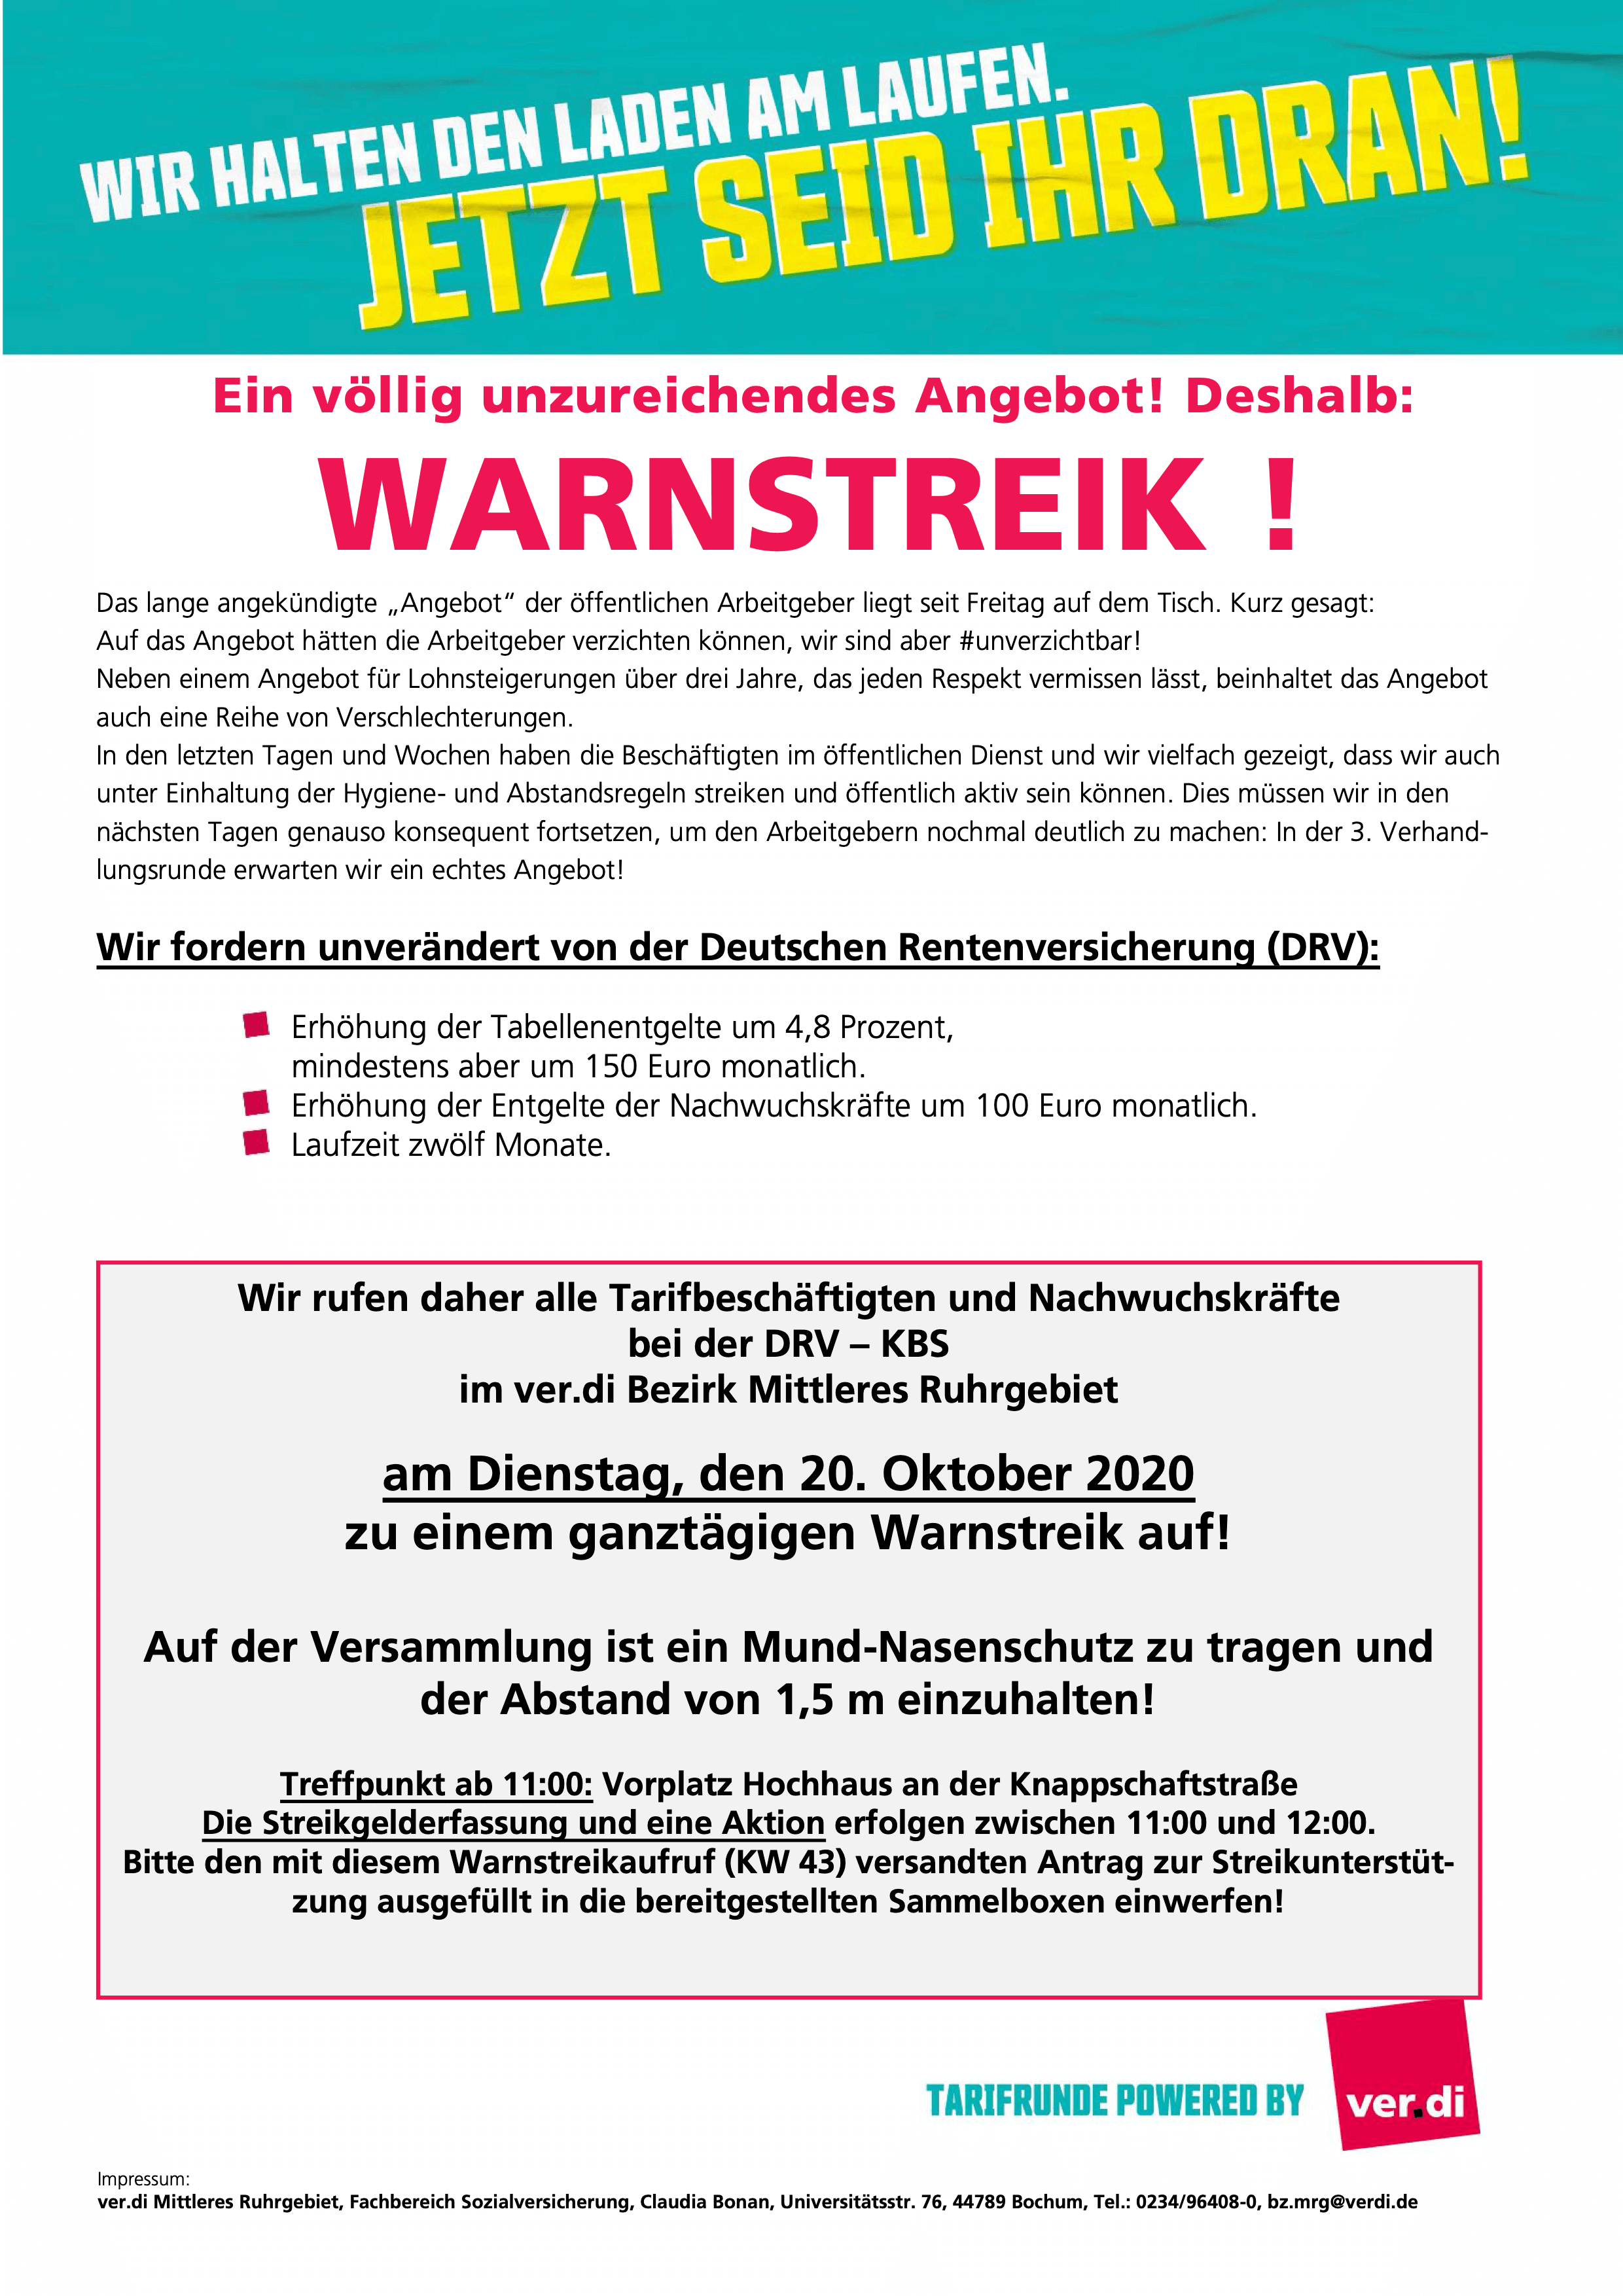 Aufruf von ver.di: Warnstreik bei der Deutschen Rentenversicherung Knappschaft-Bahn-See am 20.10.2020